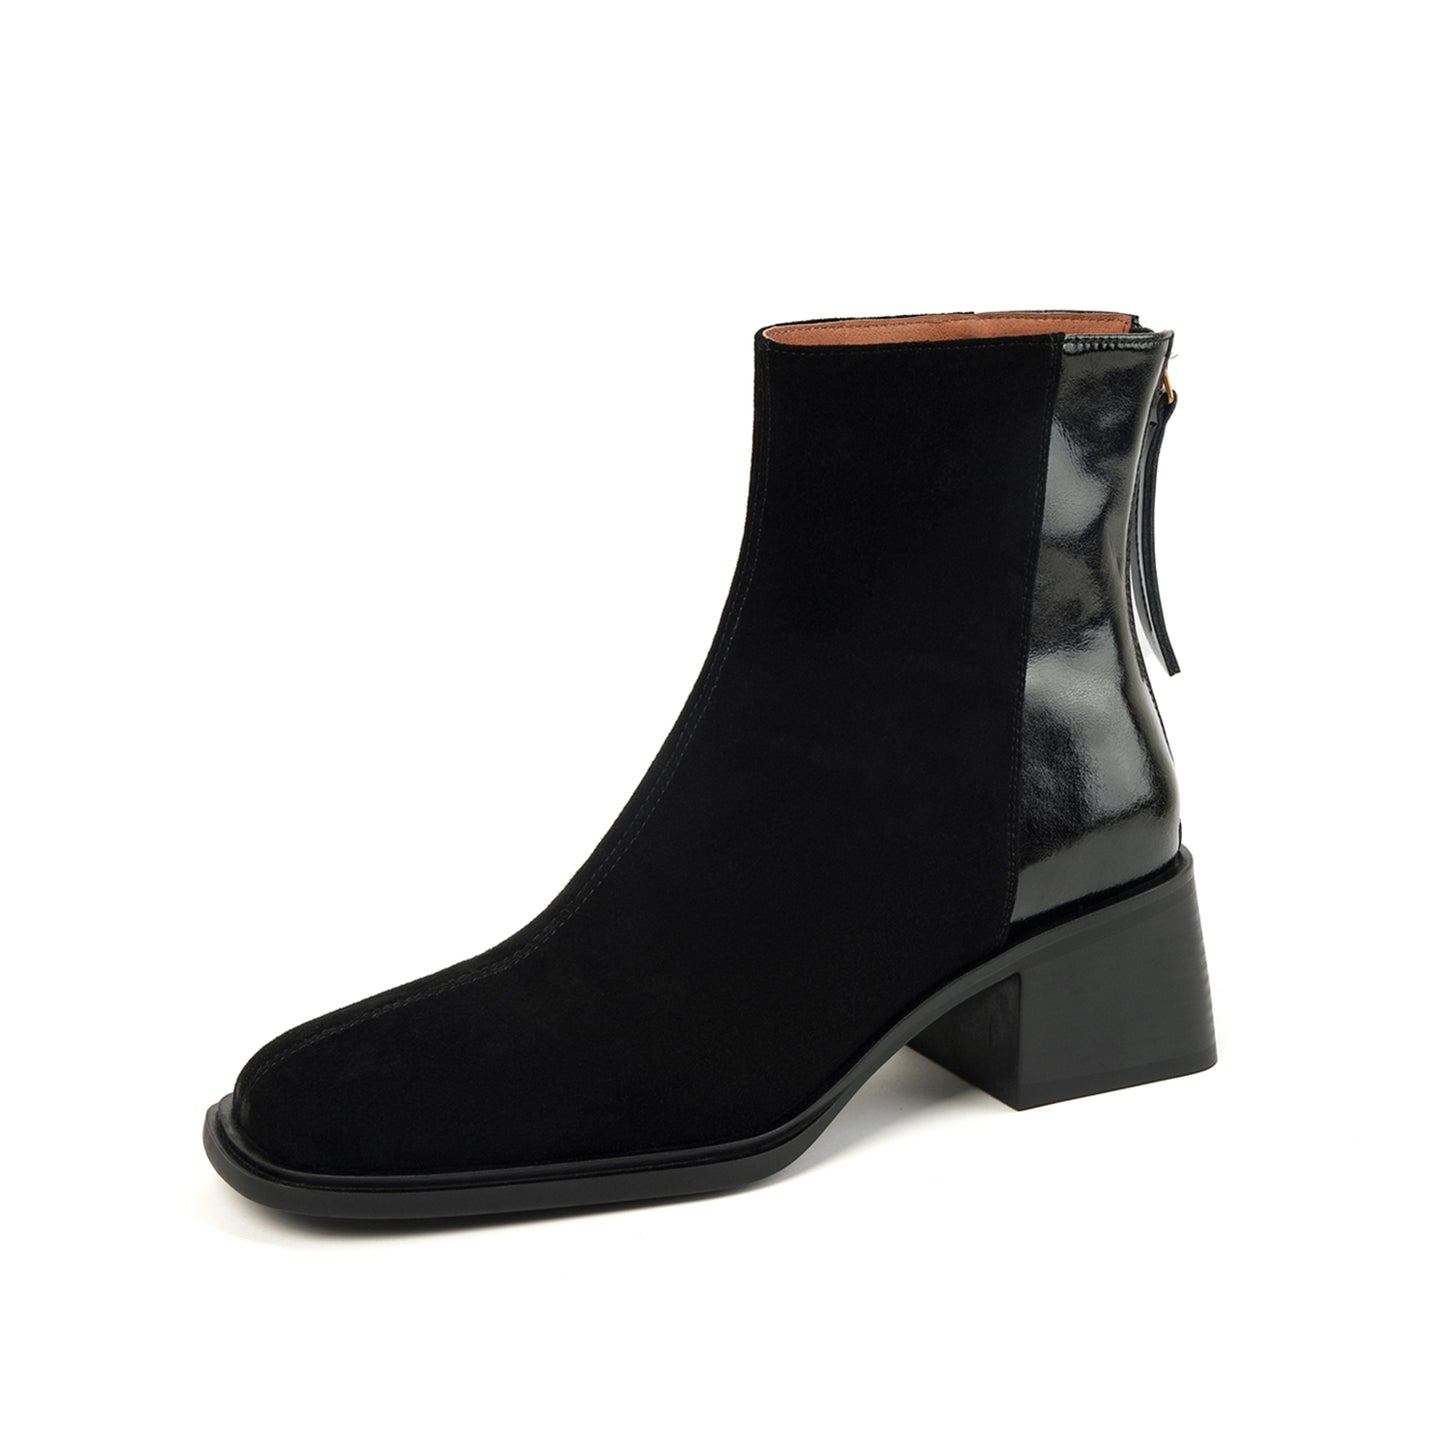 TinaCus Women's Suede Leather Handmade Zip Up Block Heel Ankle Boots